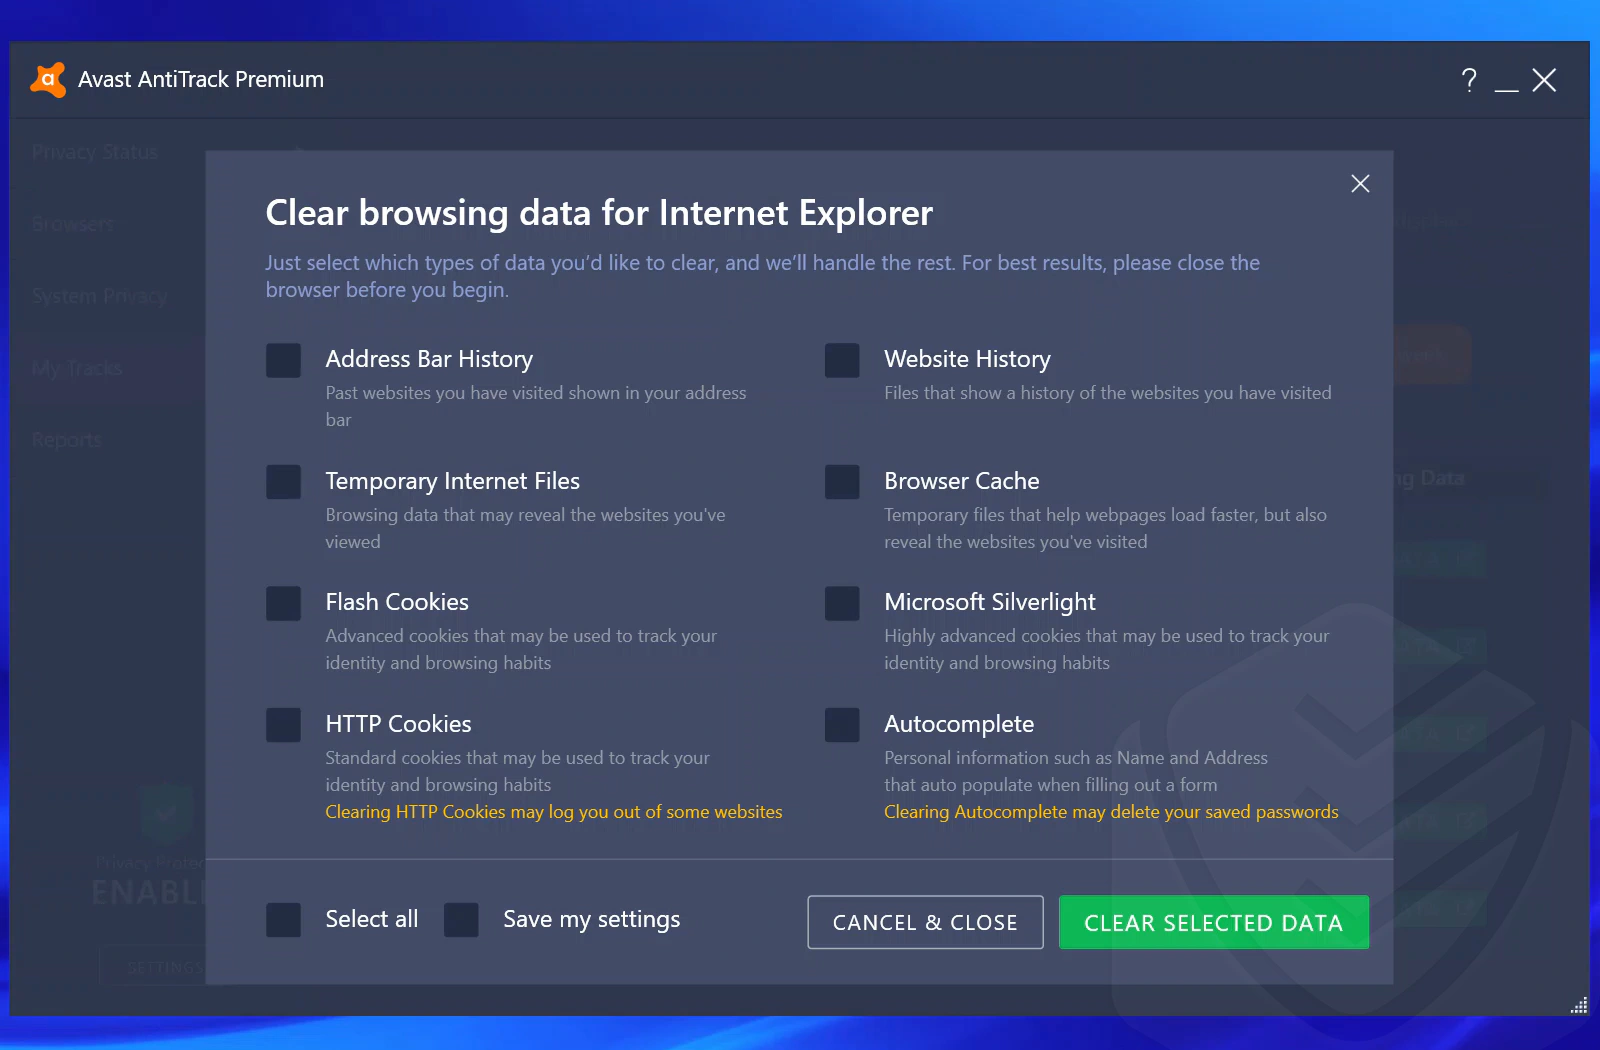 
Cancellazione dei dati di navigazione su Internet Explorer da parte di Avast